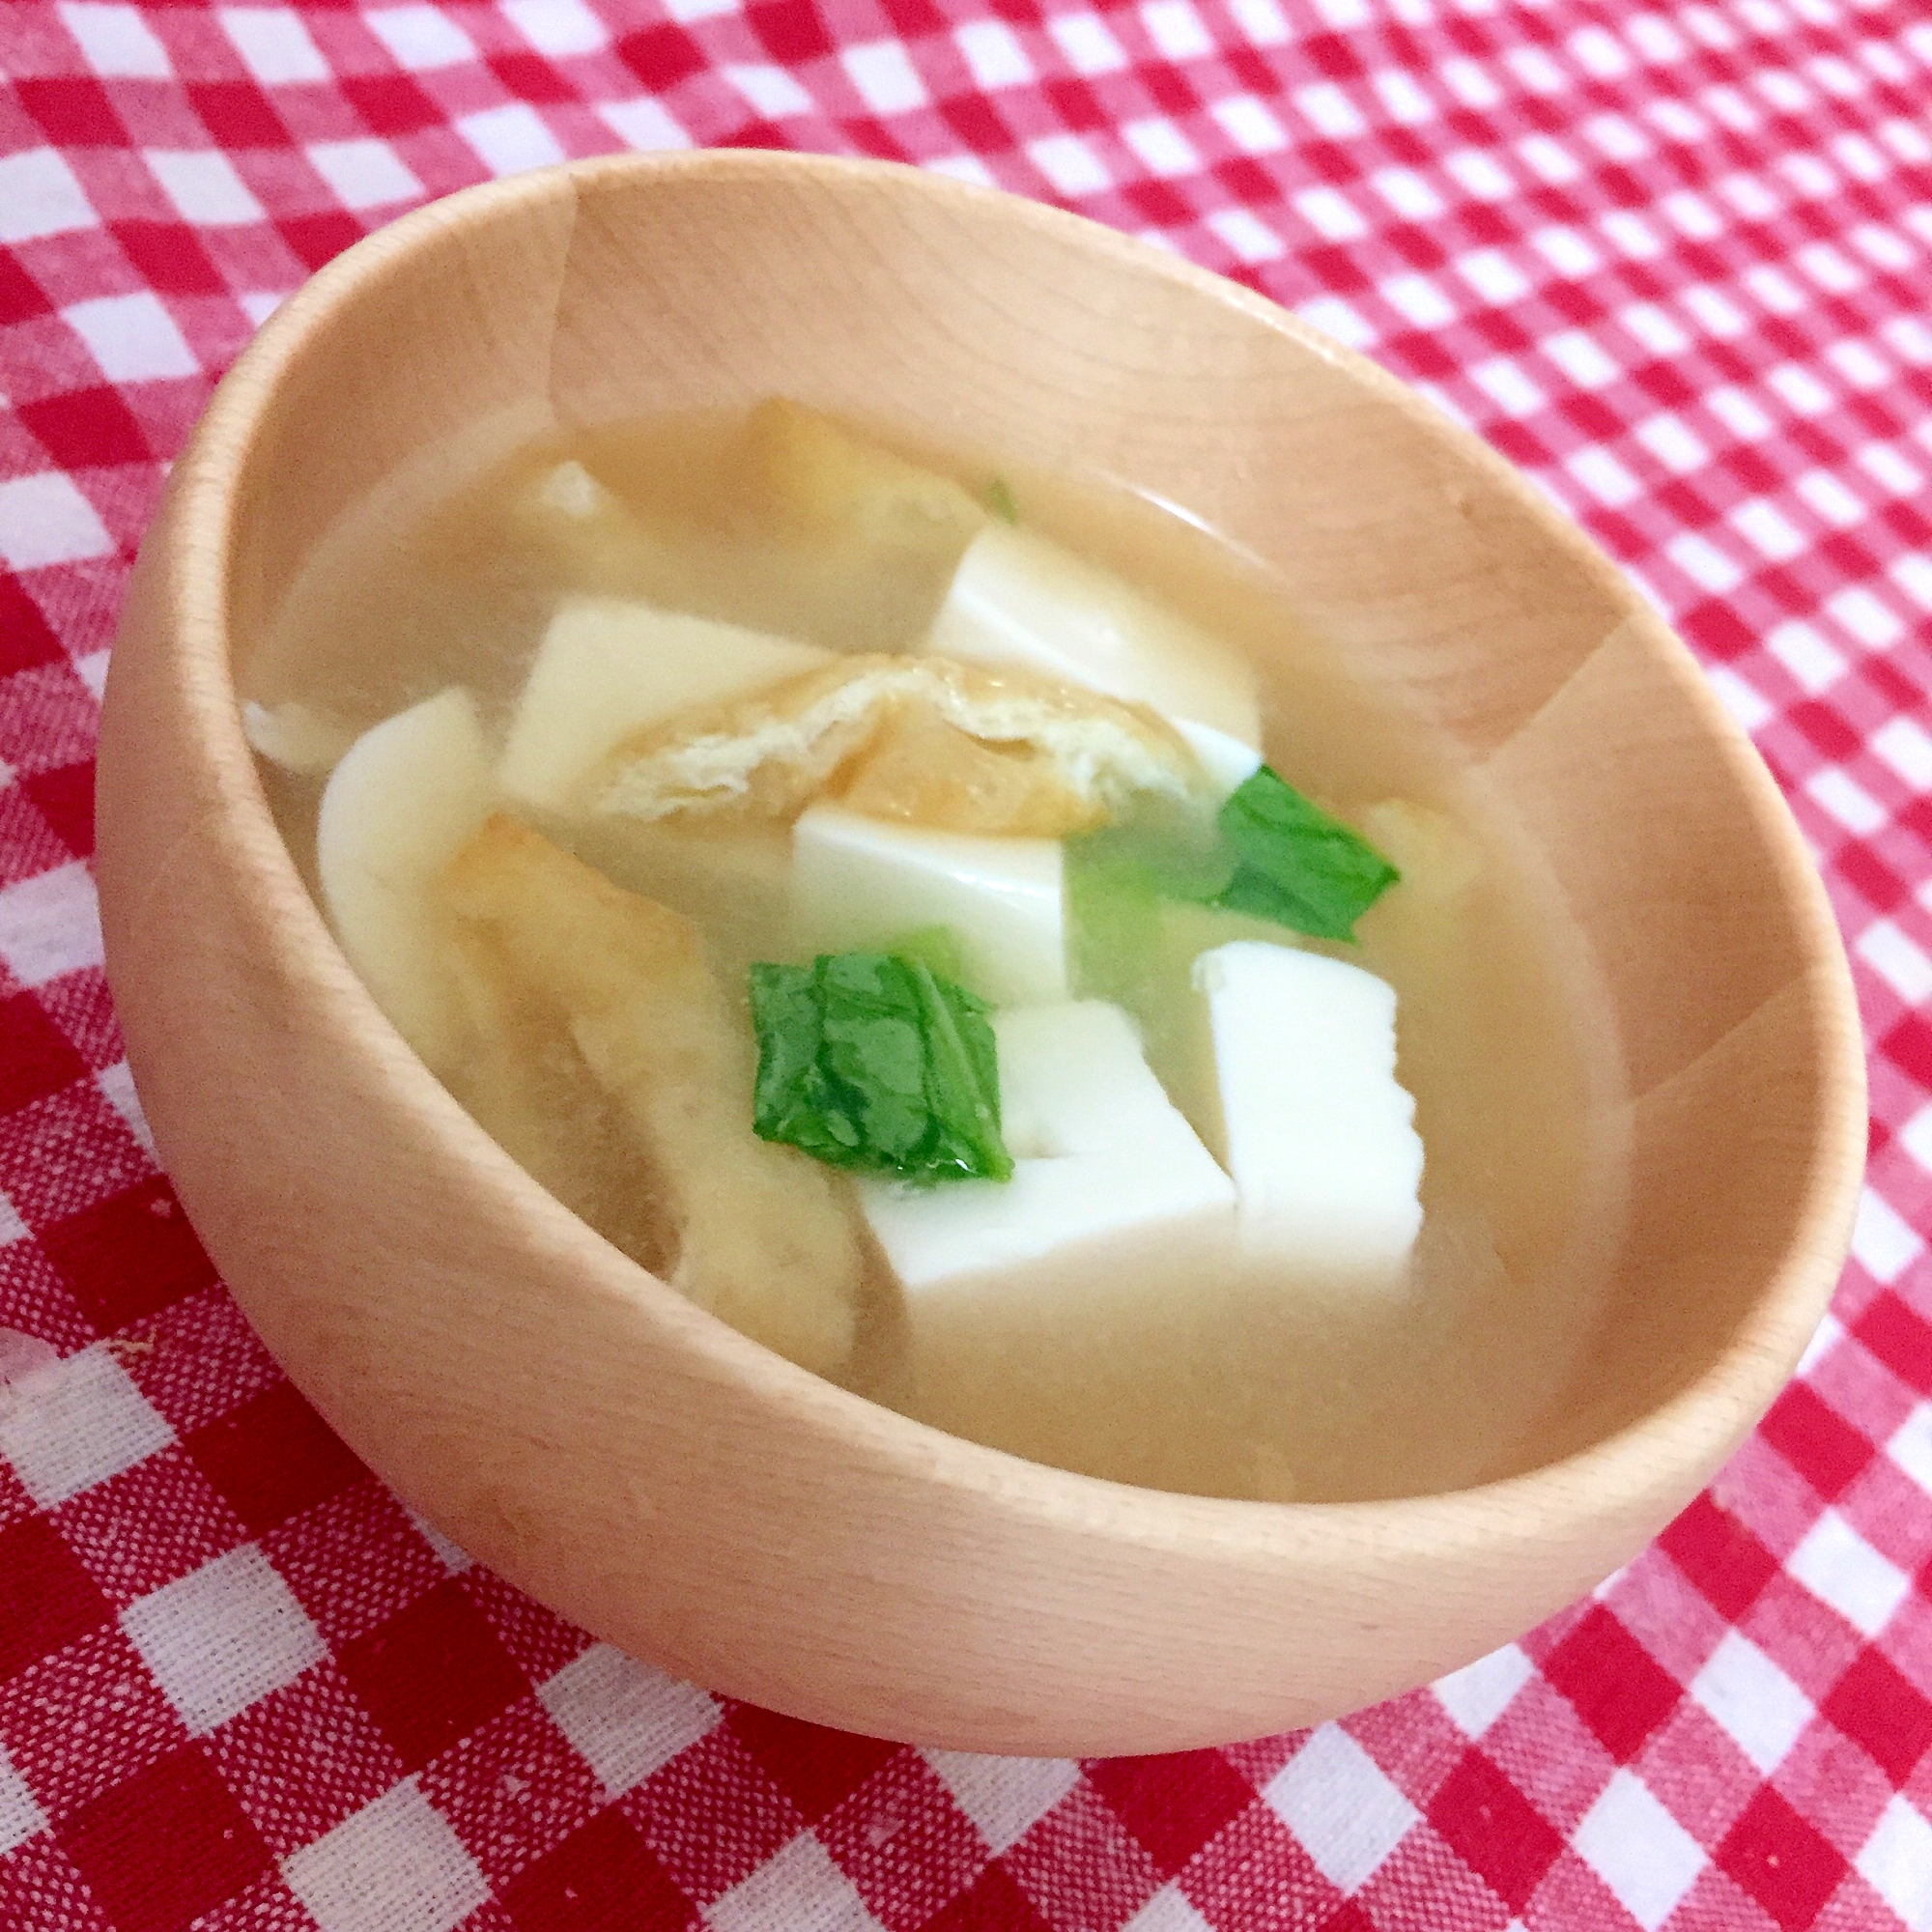 小松菜と豆腐の味噌汁☆